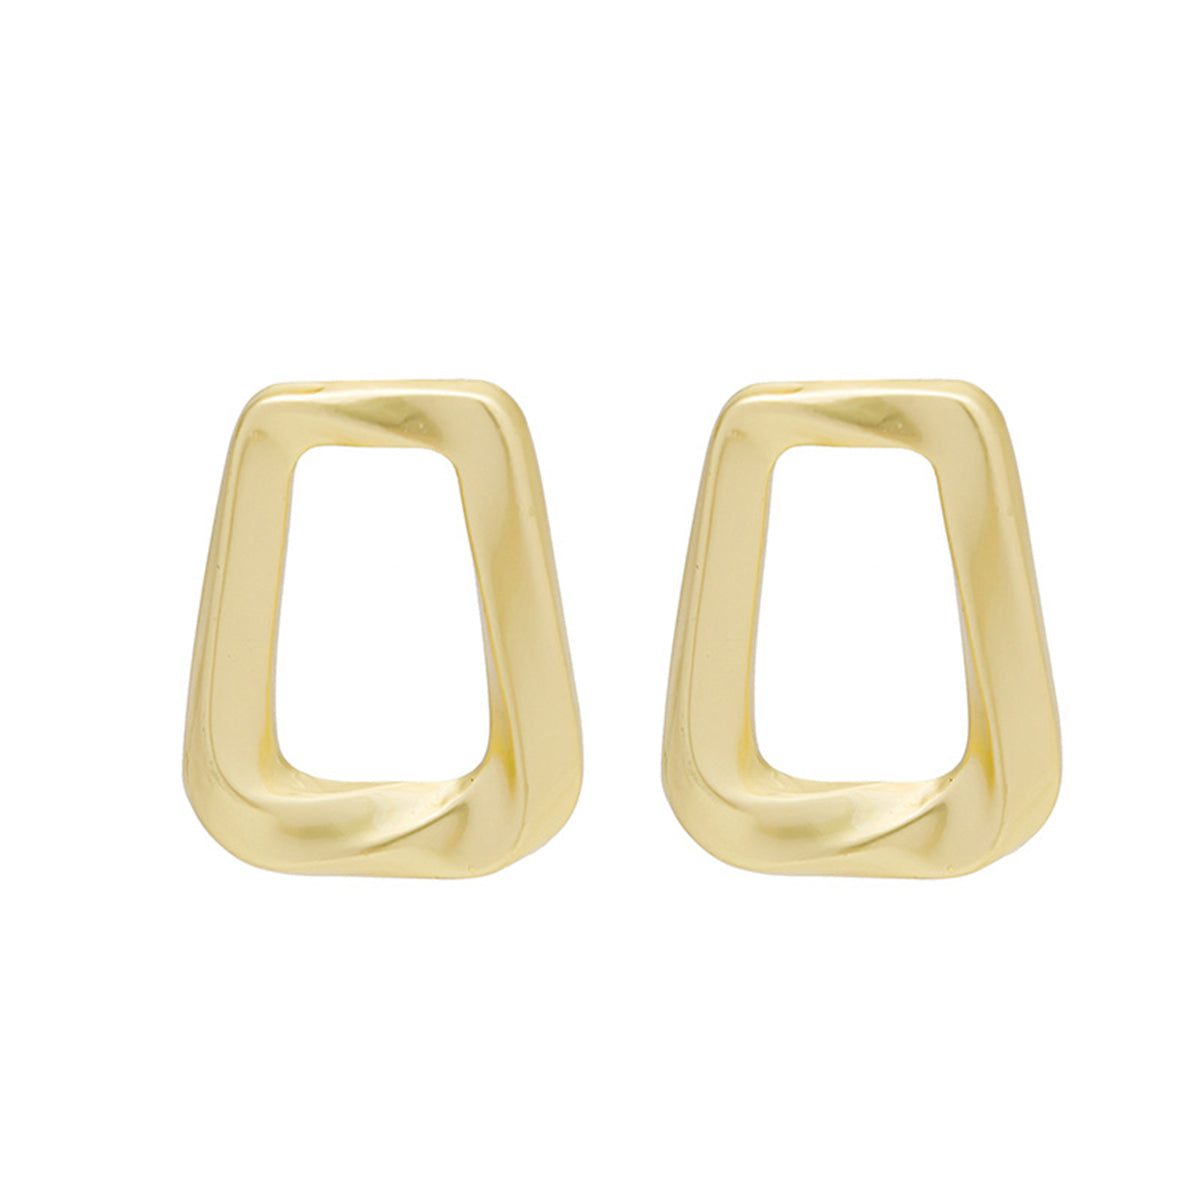 18K Gold-Plated Open Ladder Stud Earrings